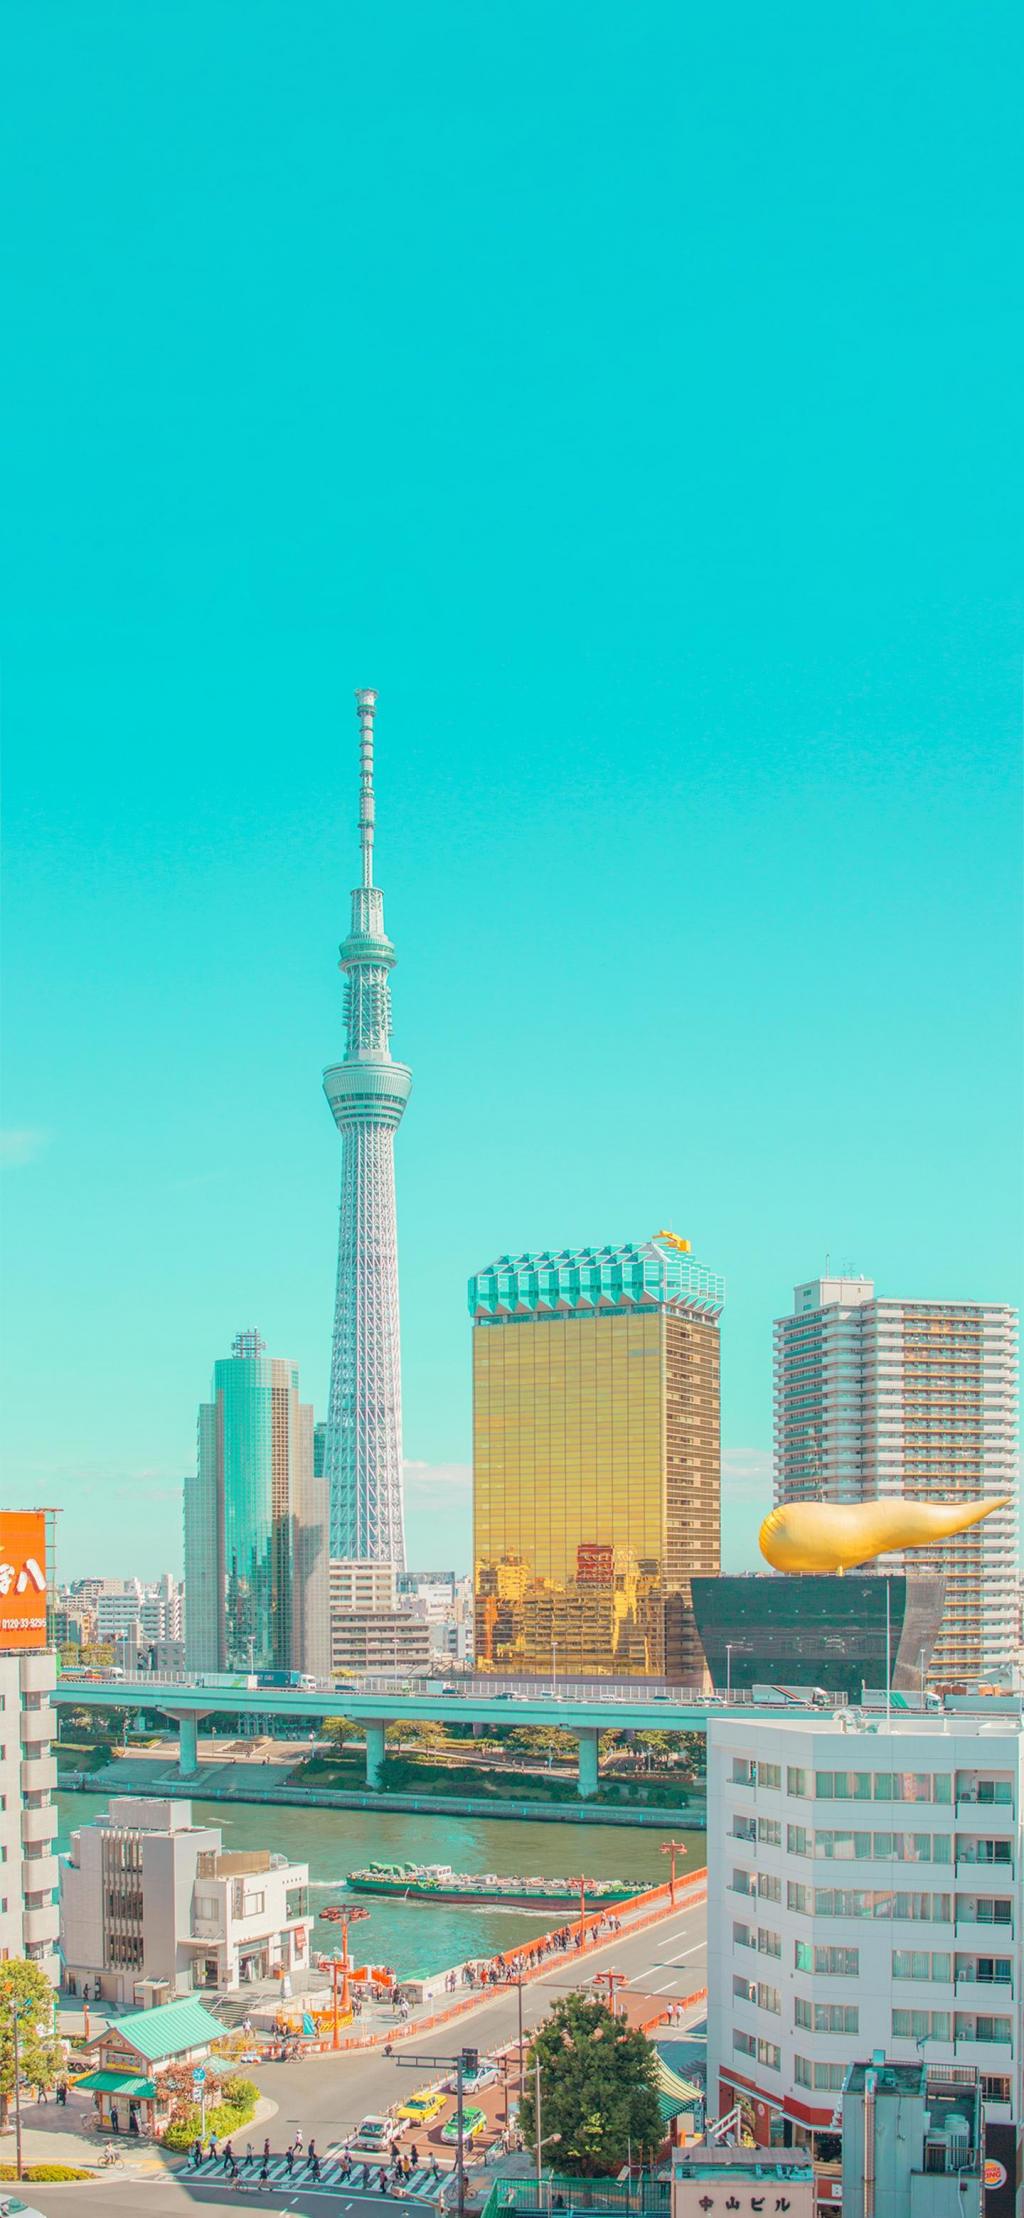 矗立在城市高楼大厦之间的东京晴空塔手机壁纸